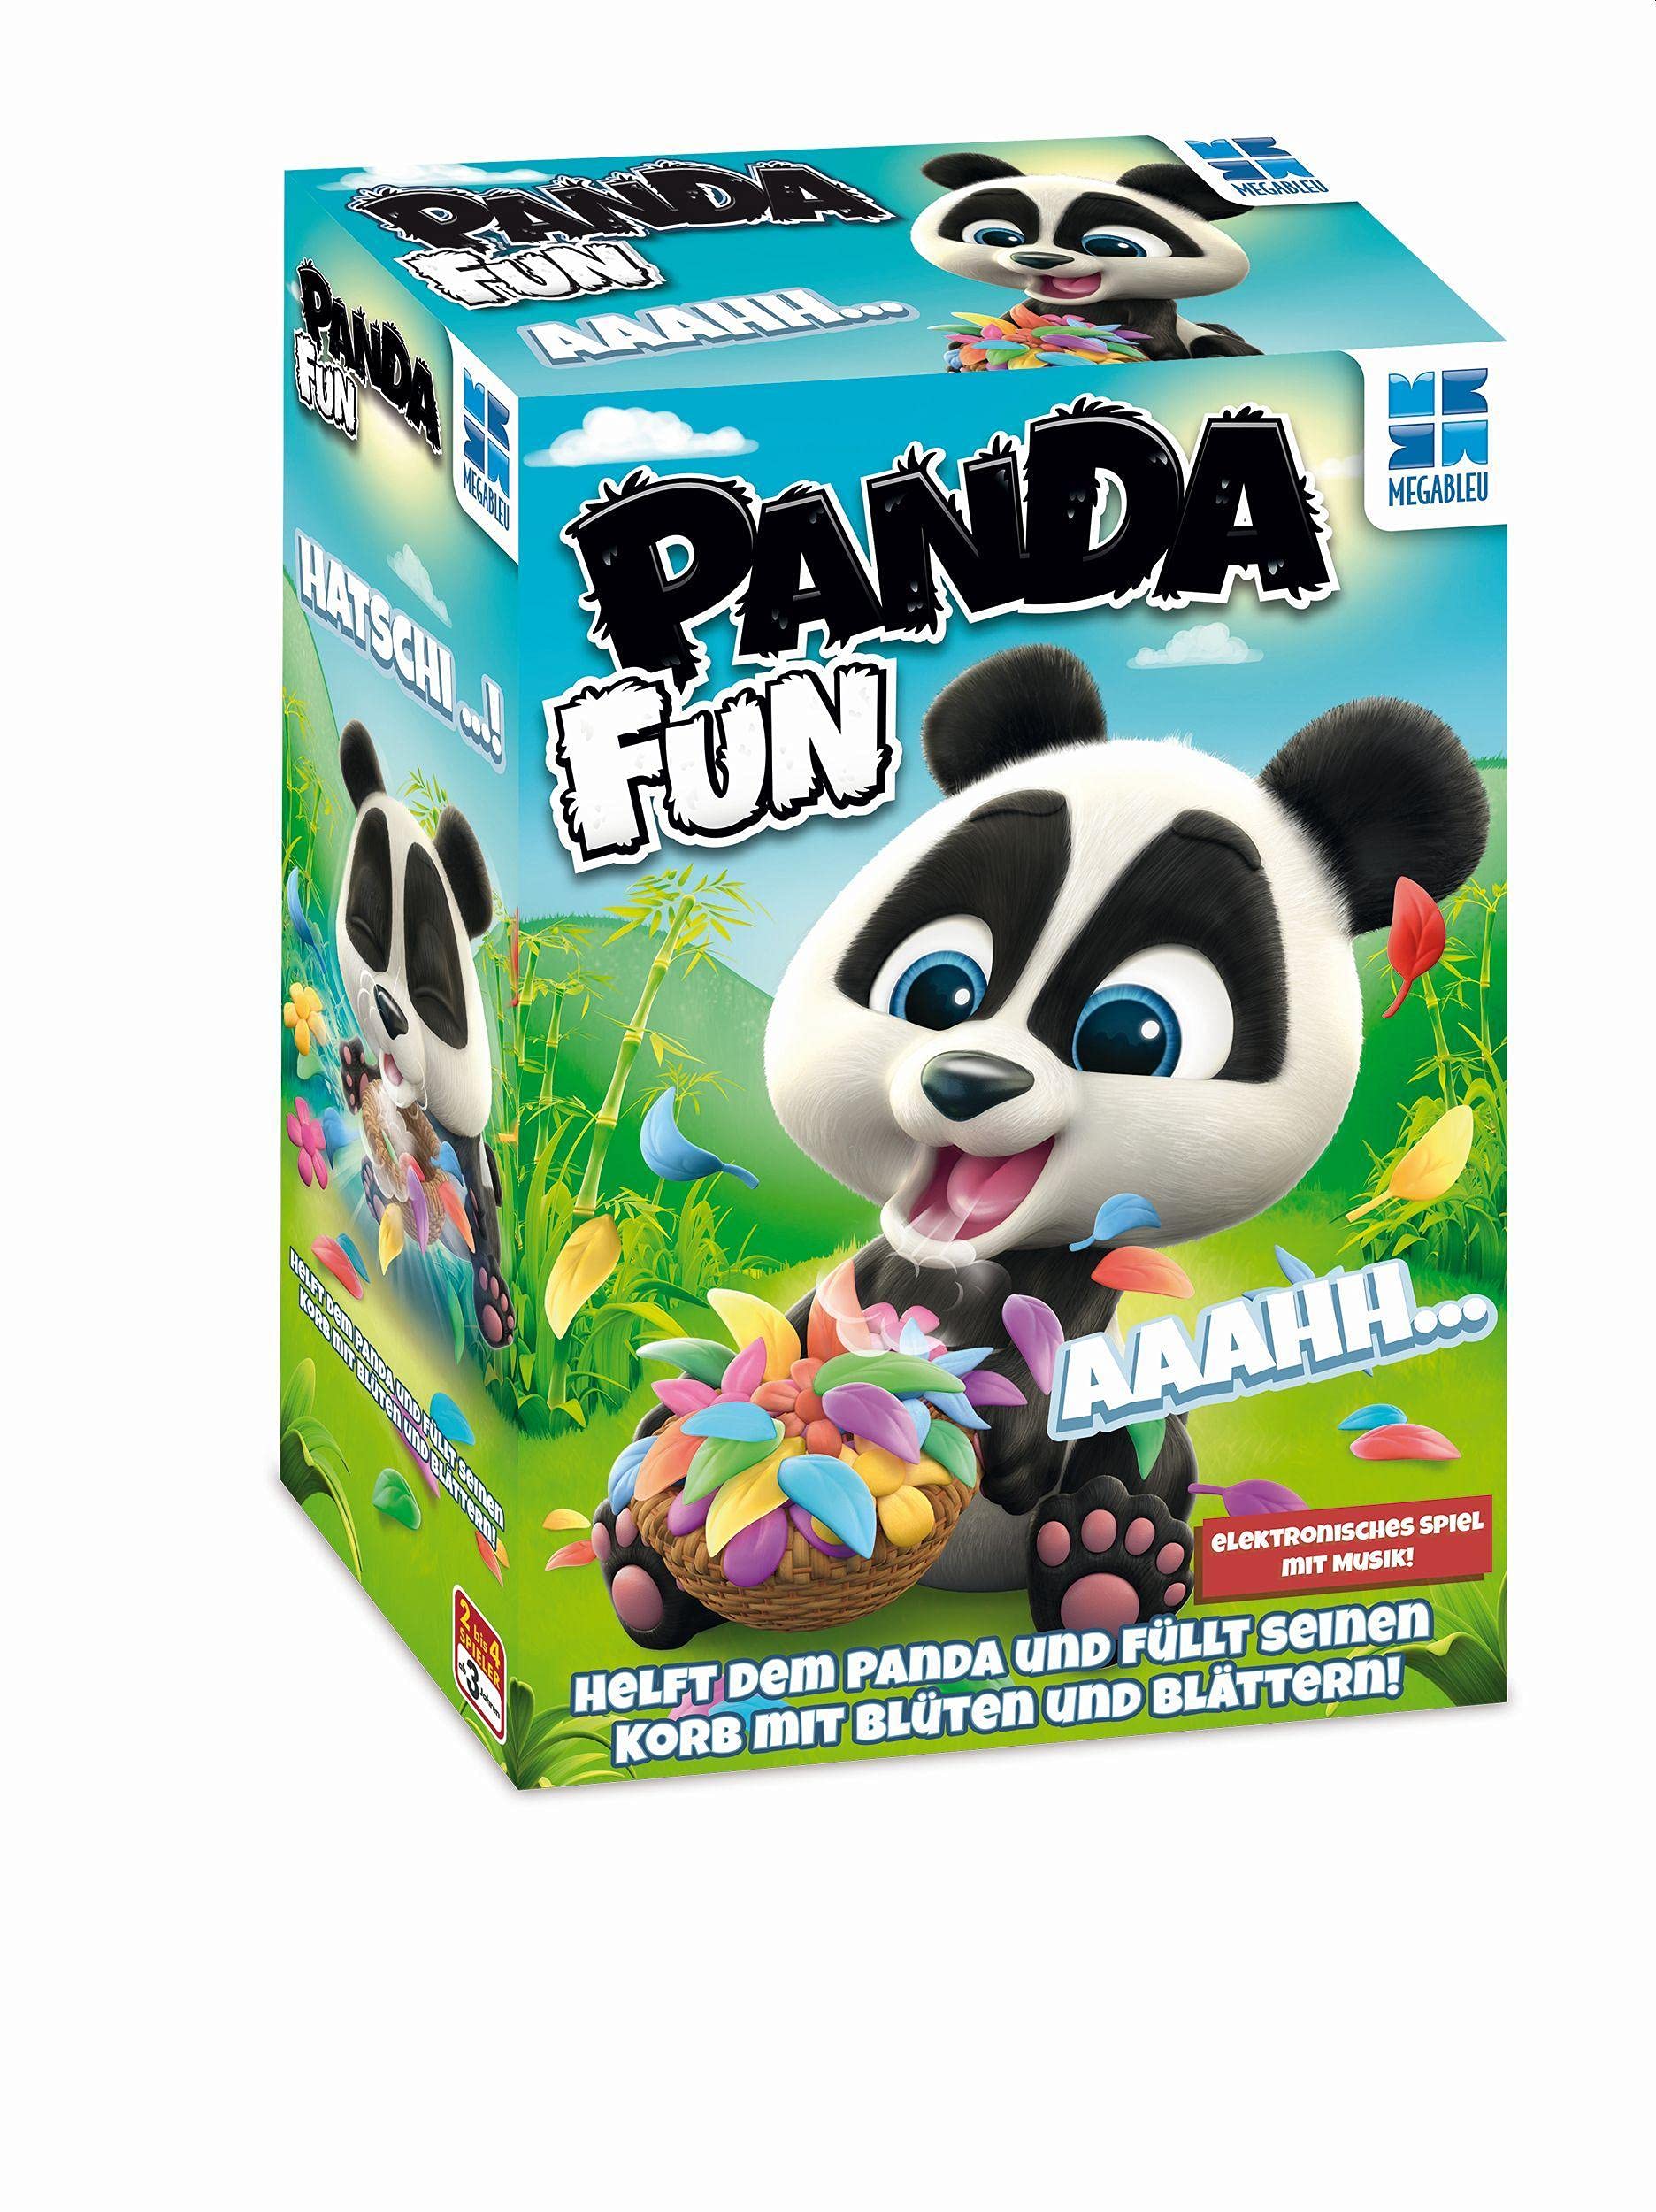 MEGABLEU | 678490 | Panda Fun | Spielspaß für die ganze Familie | Mit elektronischem Panda, der Musik spielt | Kinderspiel | für 2 bis 4 Spieler ab 5 Jahren | Helft dem Panda, sein Körbchen zu füllen!